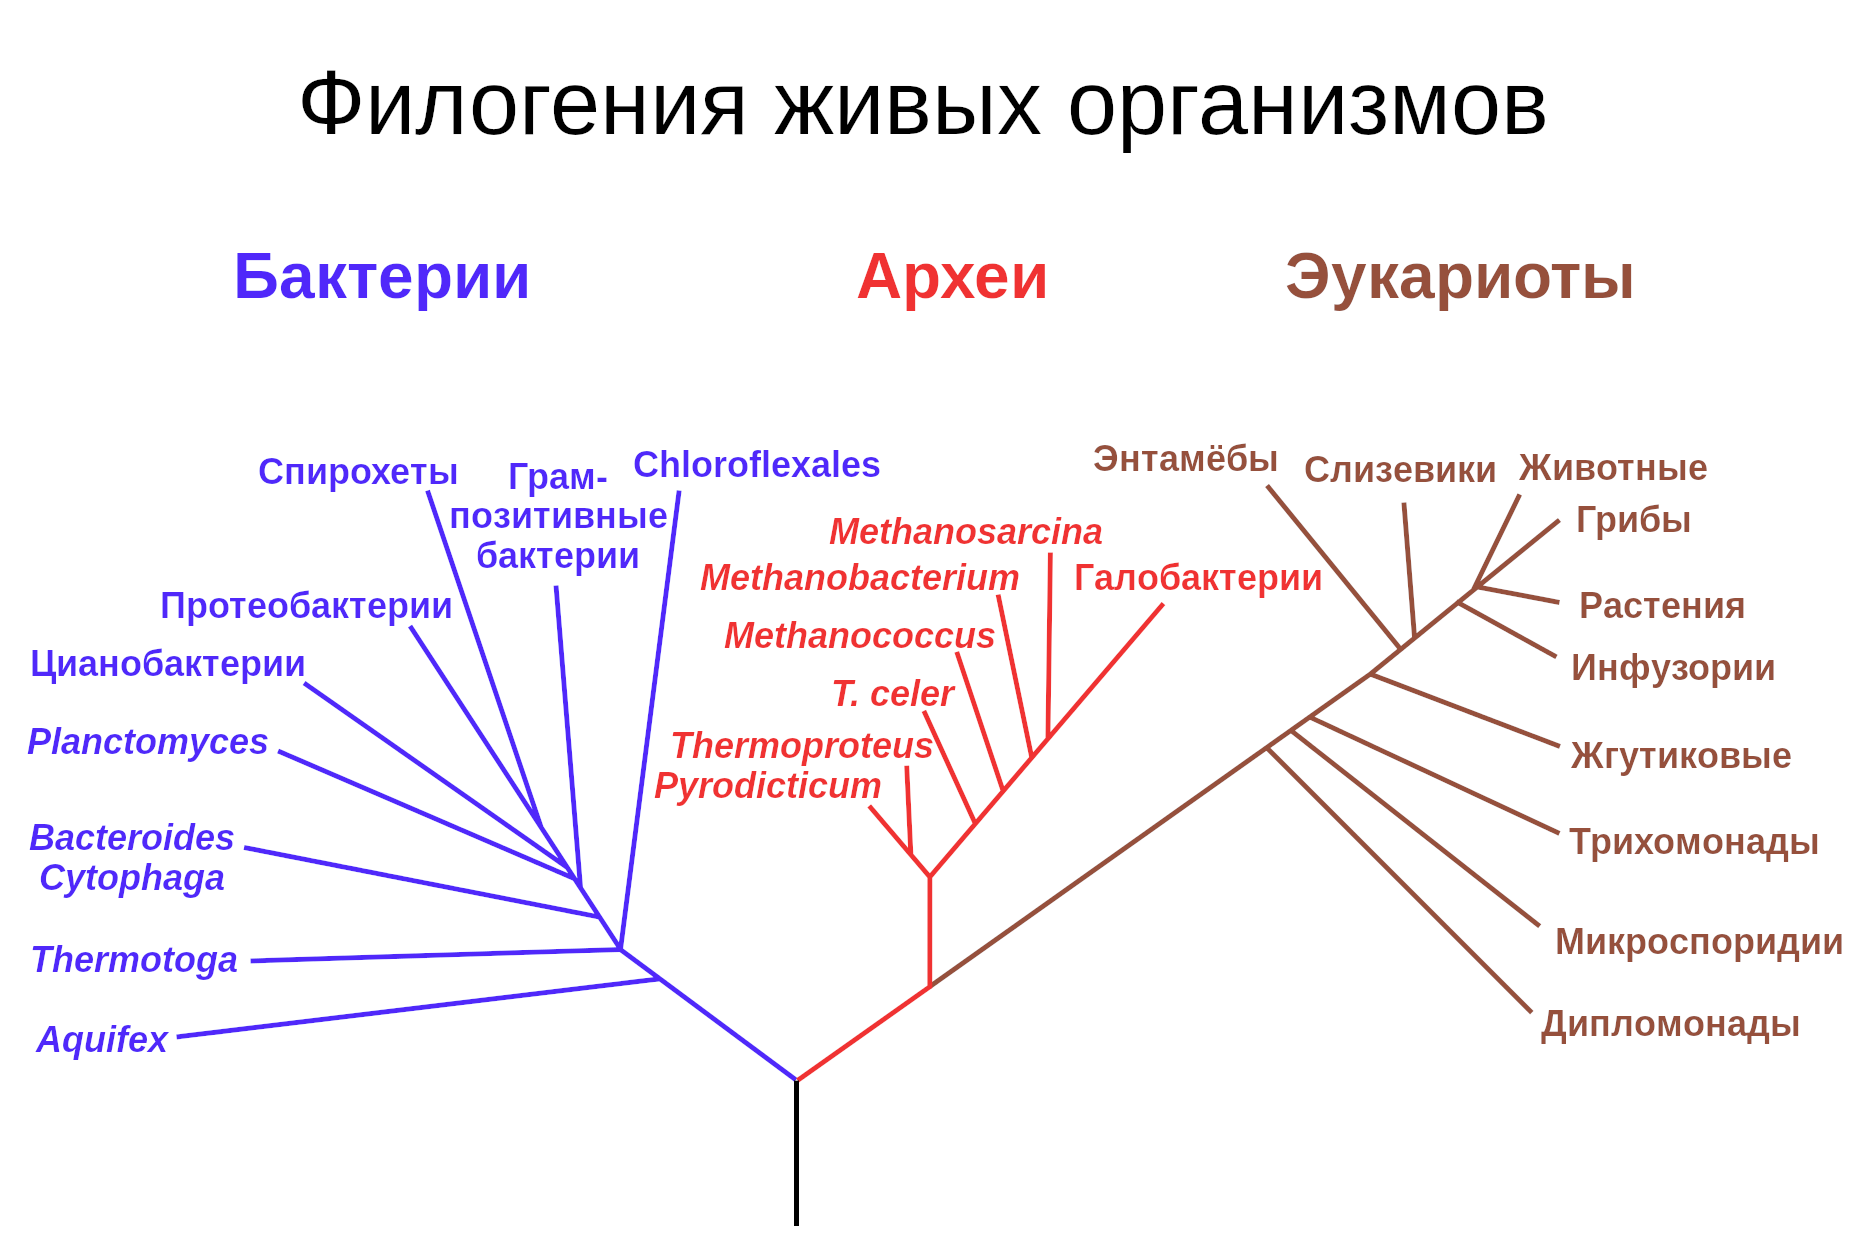 Так выглядело дерево жизни до открытия роли ГПГ в эволюции.